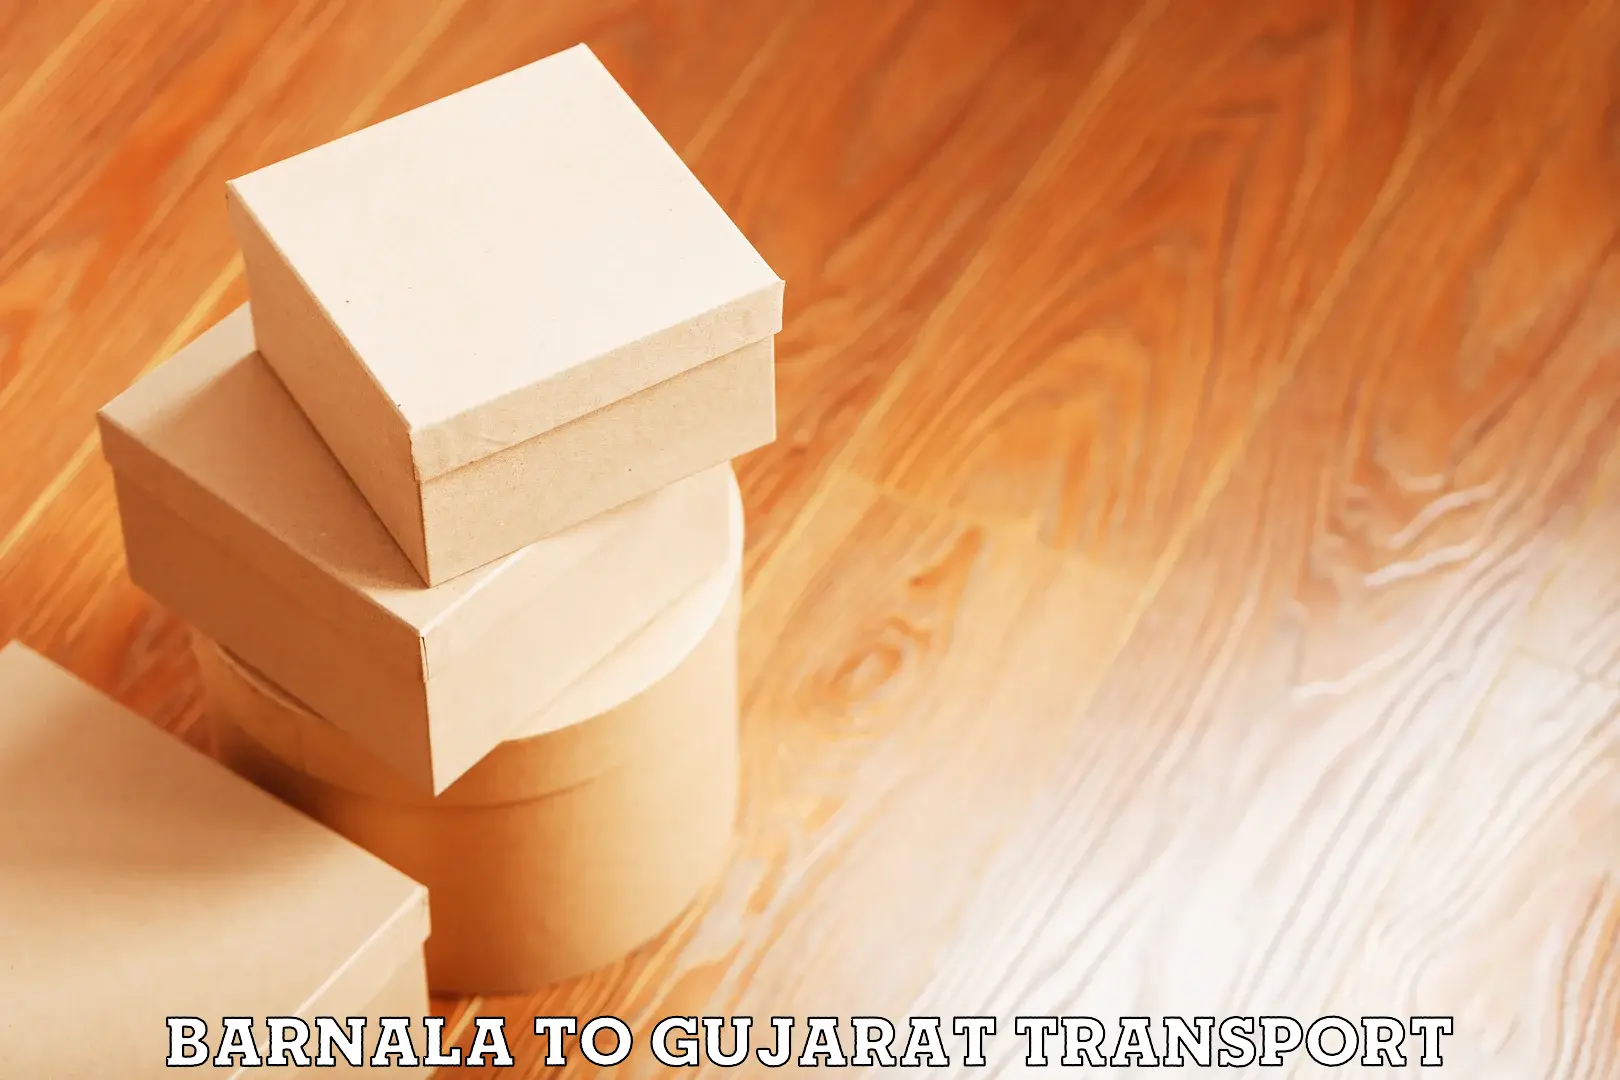 International cargo transportation services Barnala to Gujarat